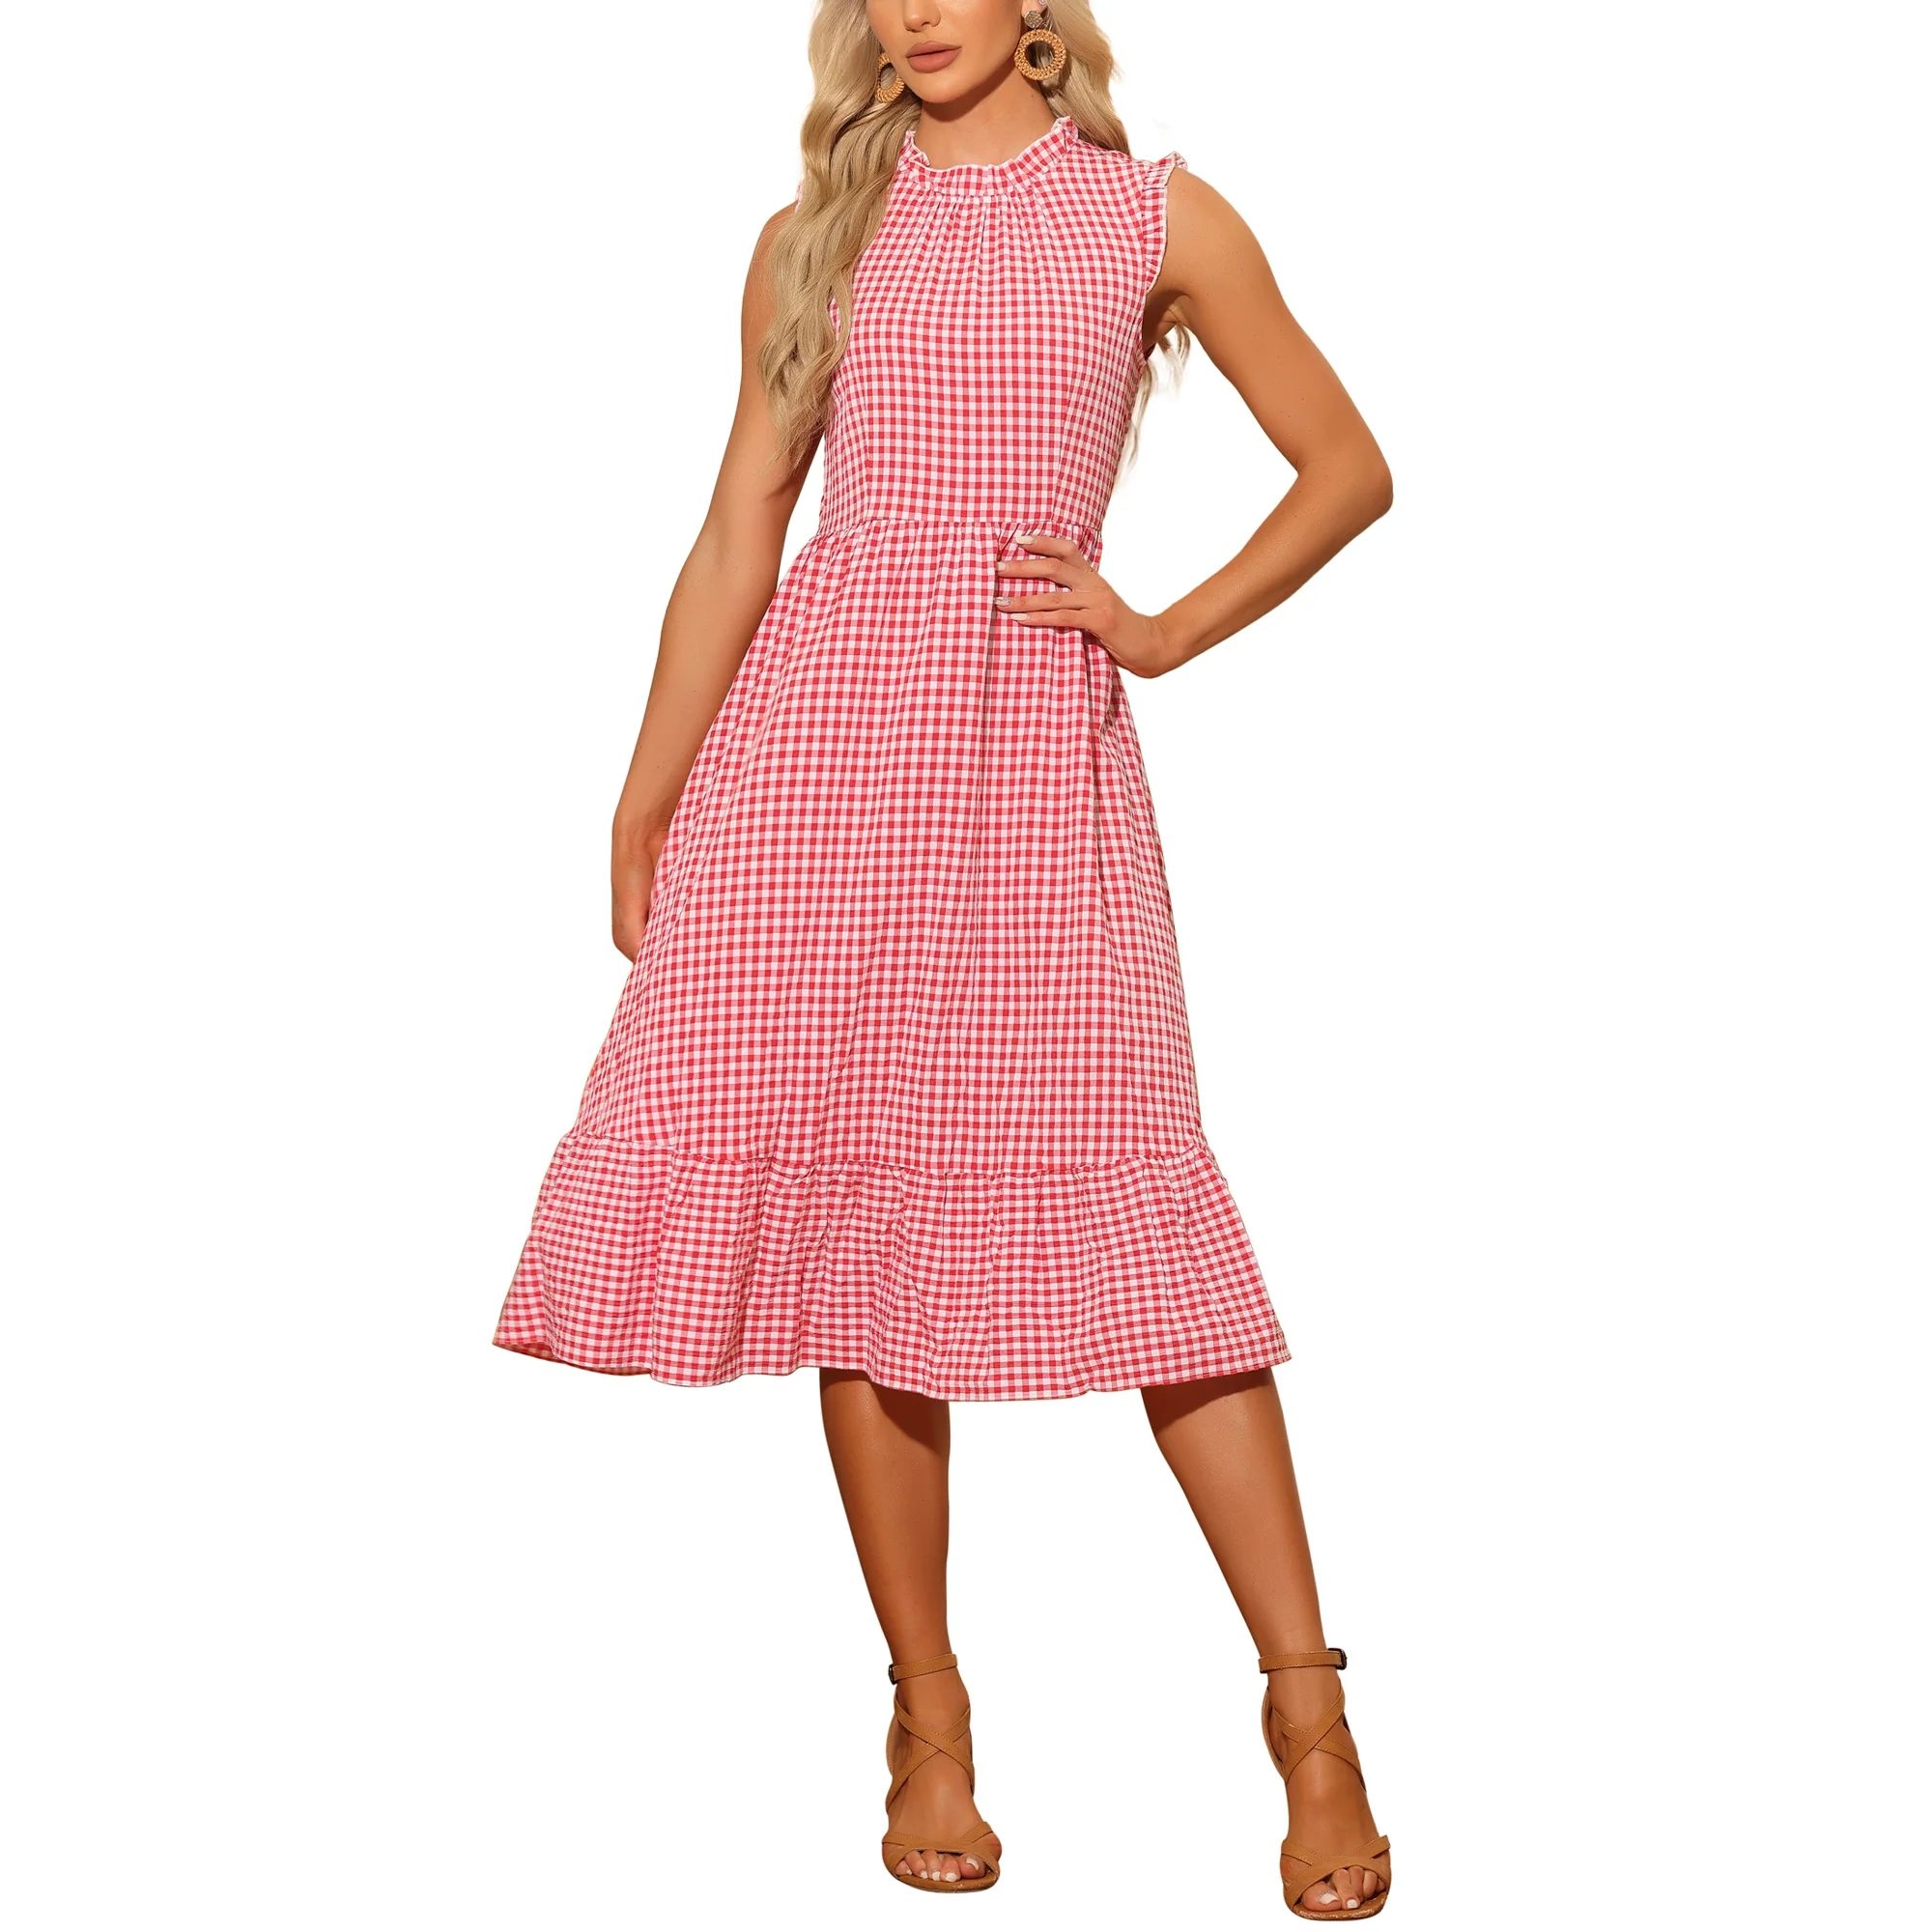 Allegra K Check Plaid Dress for Women's Mock Neck Ruffled Sleeveless Dress | Walmart (US)